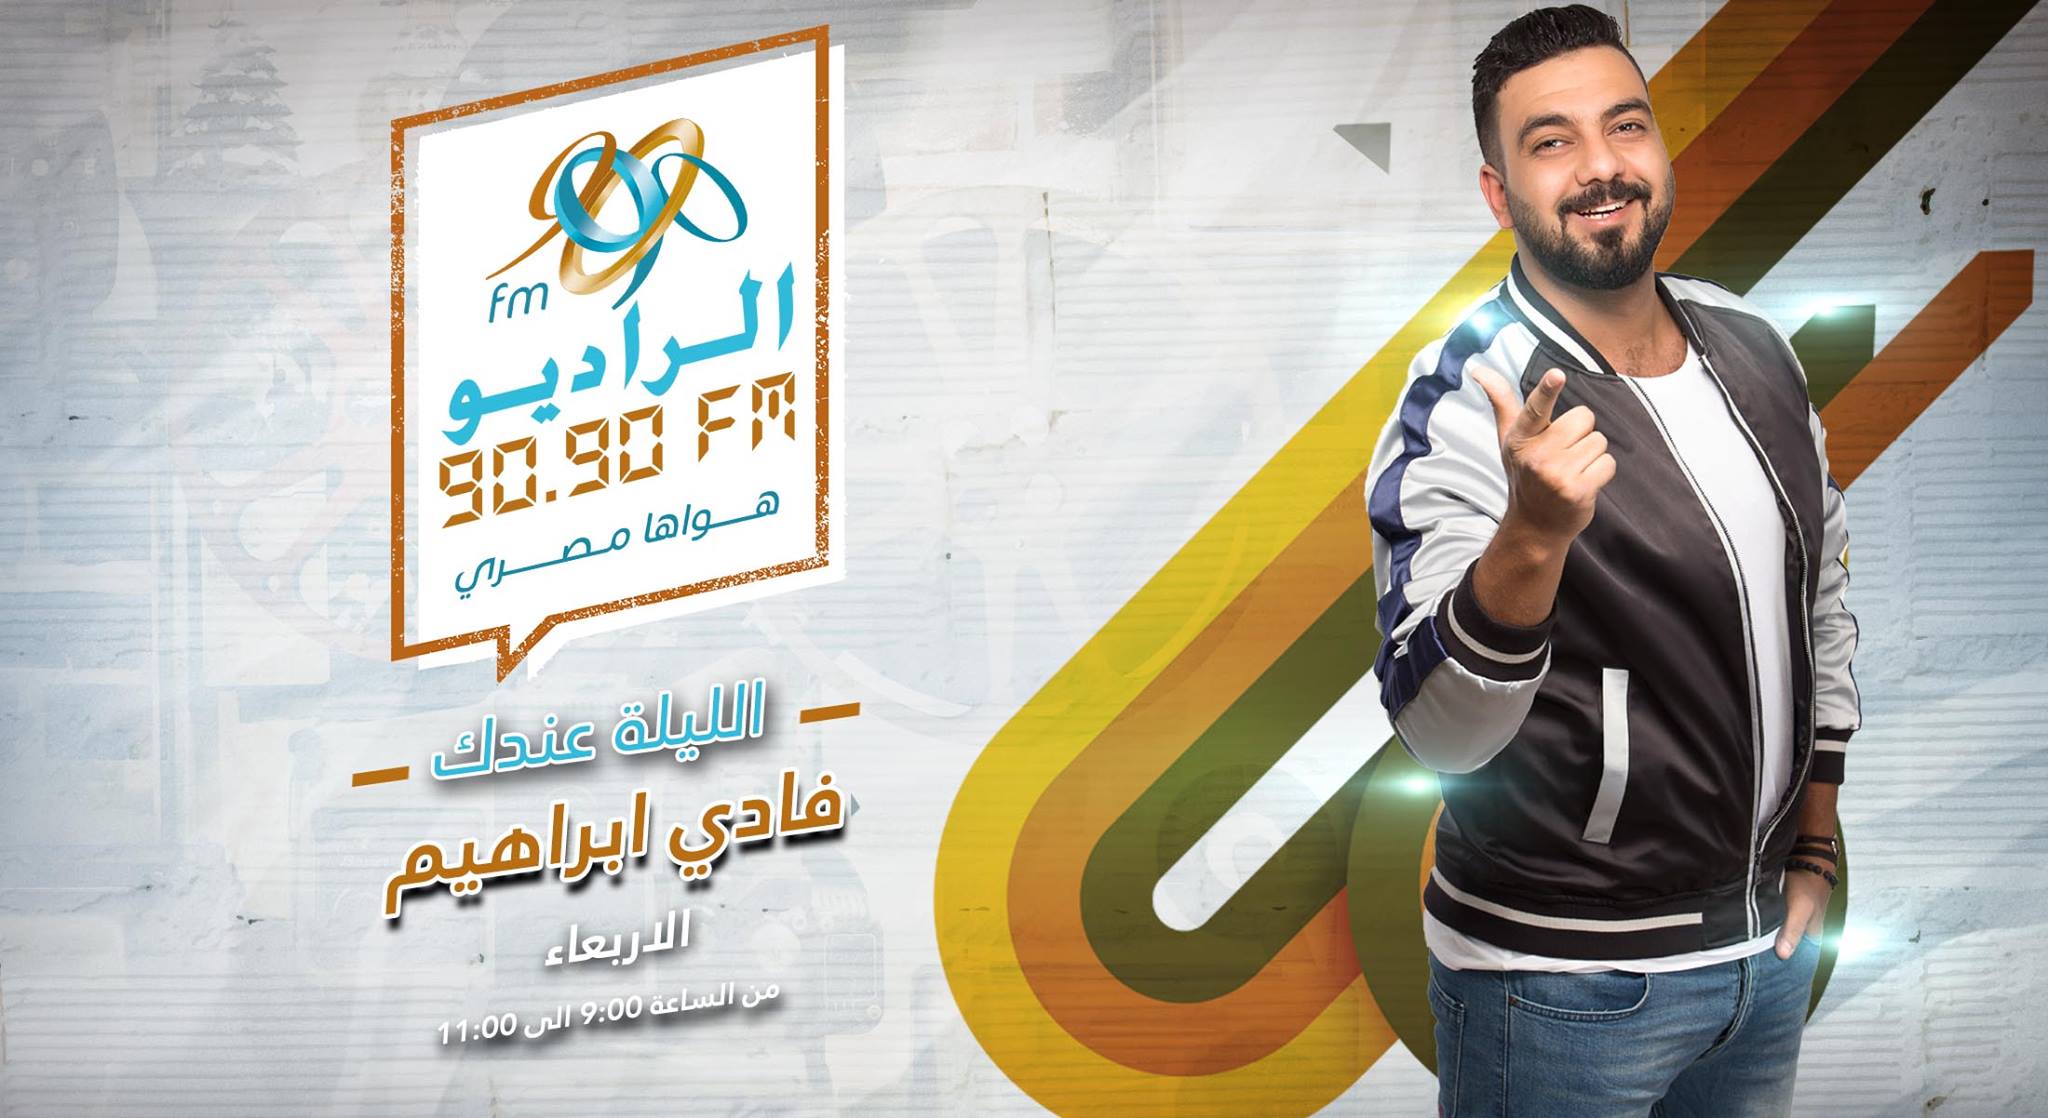 تامر حسين يحتفل بـ«معدى الناس» على الراديو 9090